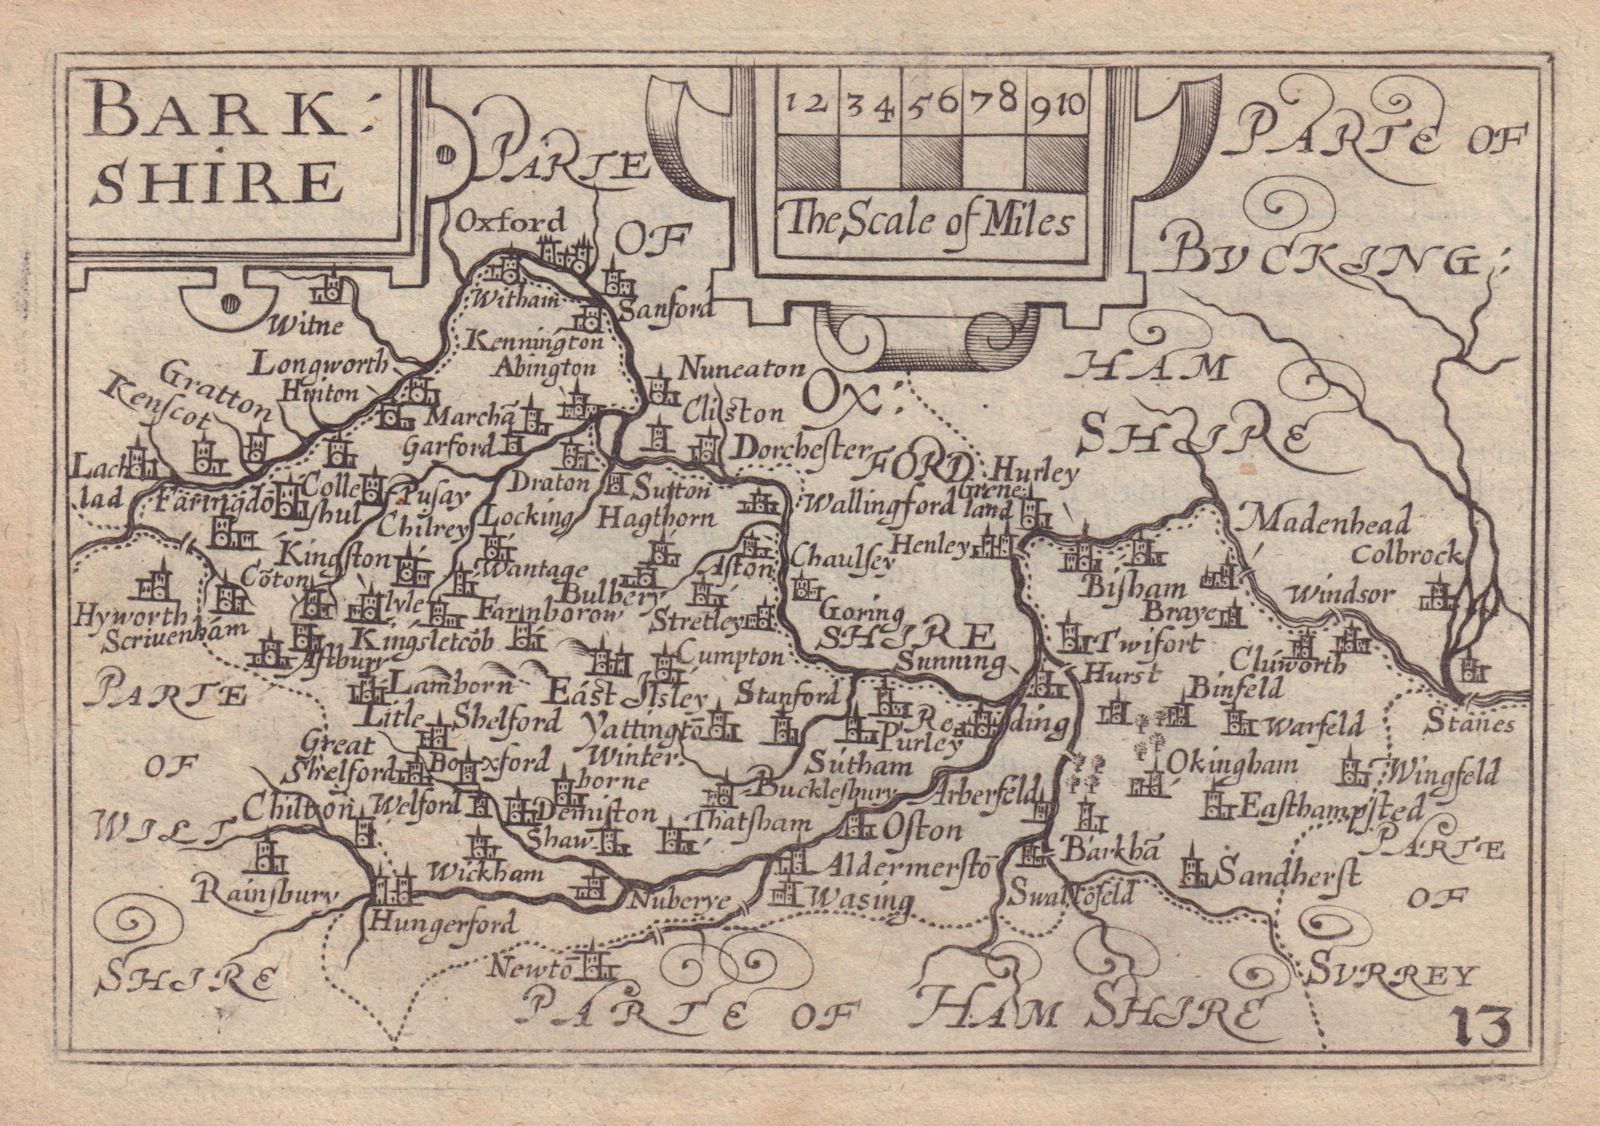 Barkshire by van den Keere. "Speed miniature" Berkshire county map 1632